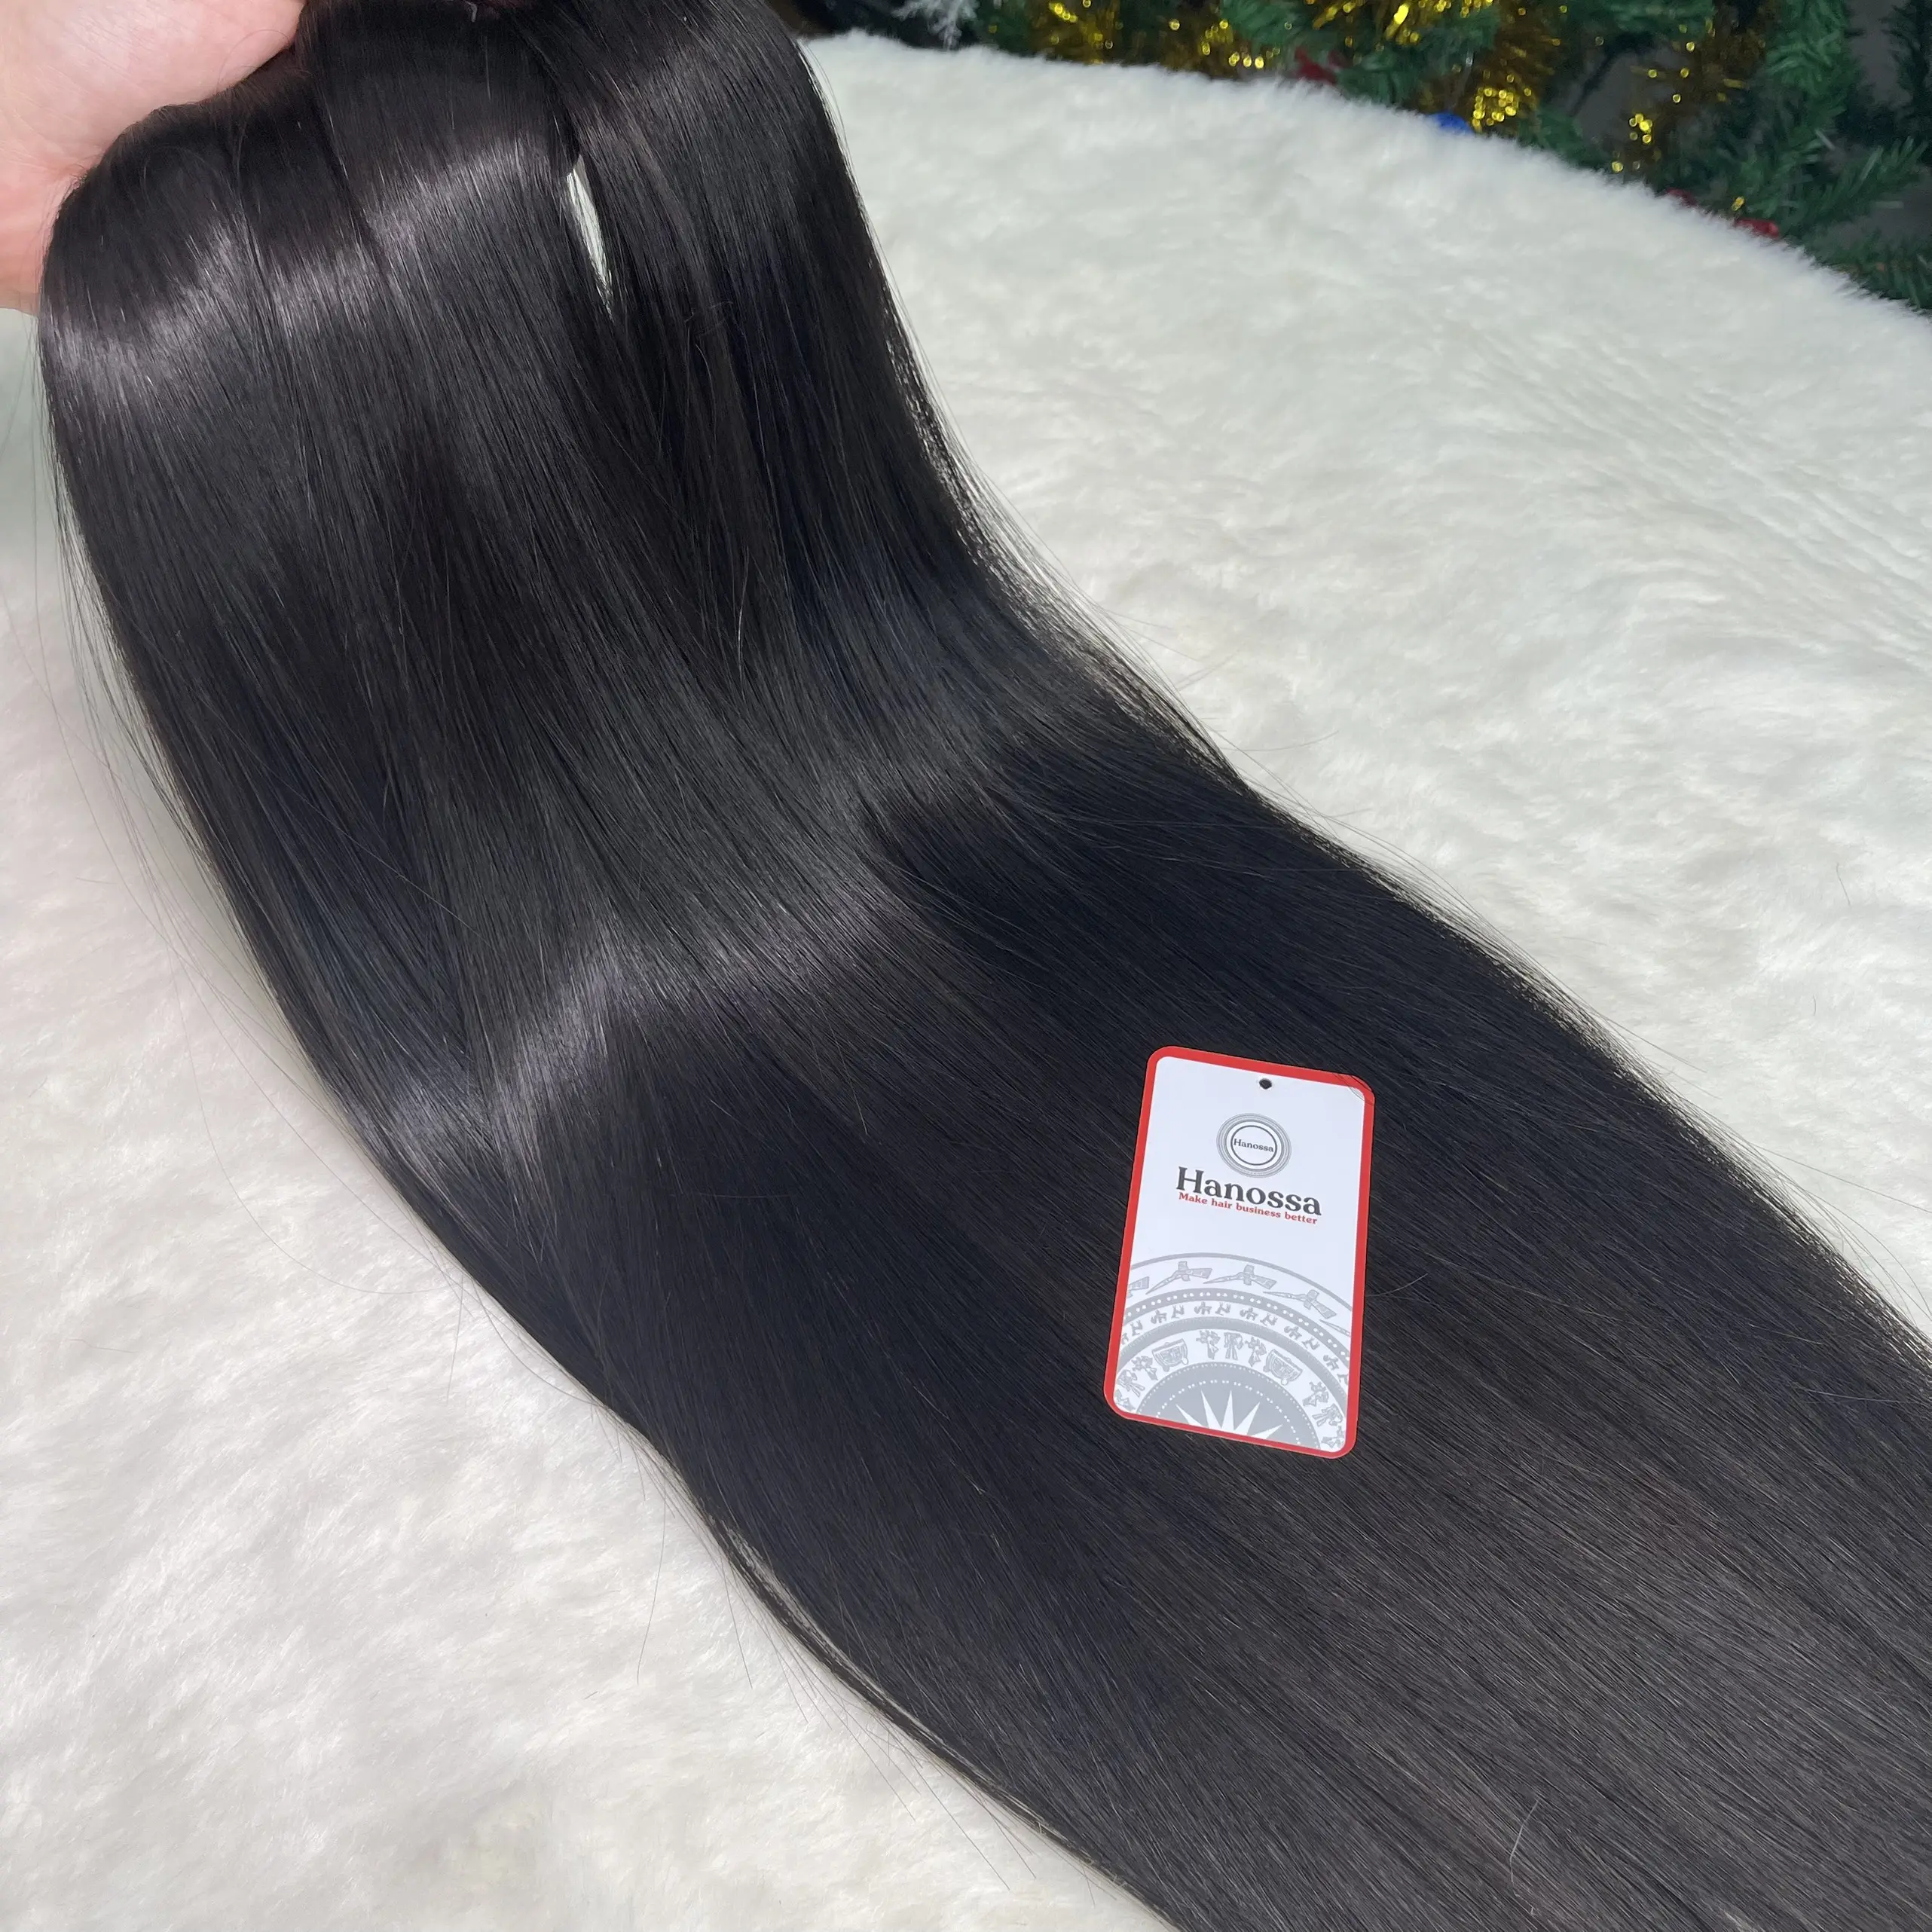 % 100% gerçek saç vietnamca doğal kemik düz ürün için en iyi kaliteyi oluşturmak için güçlü tüylerden seçilir